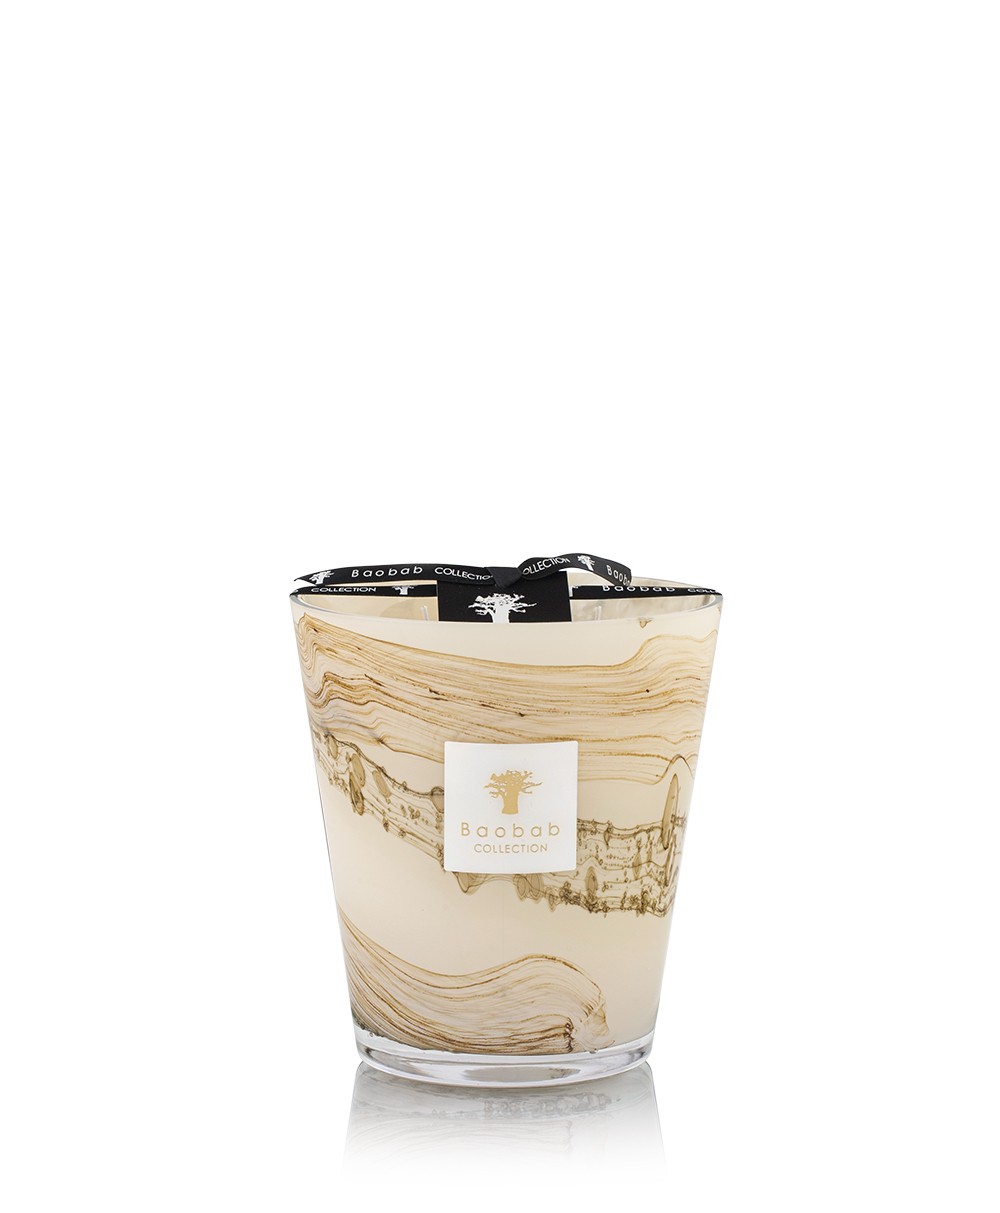 Produktbild der Sand Siloli Duftkerze von Baobab im RAUM concept store 